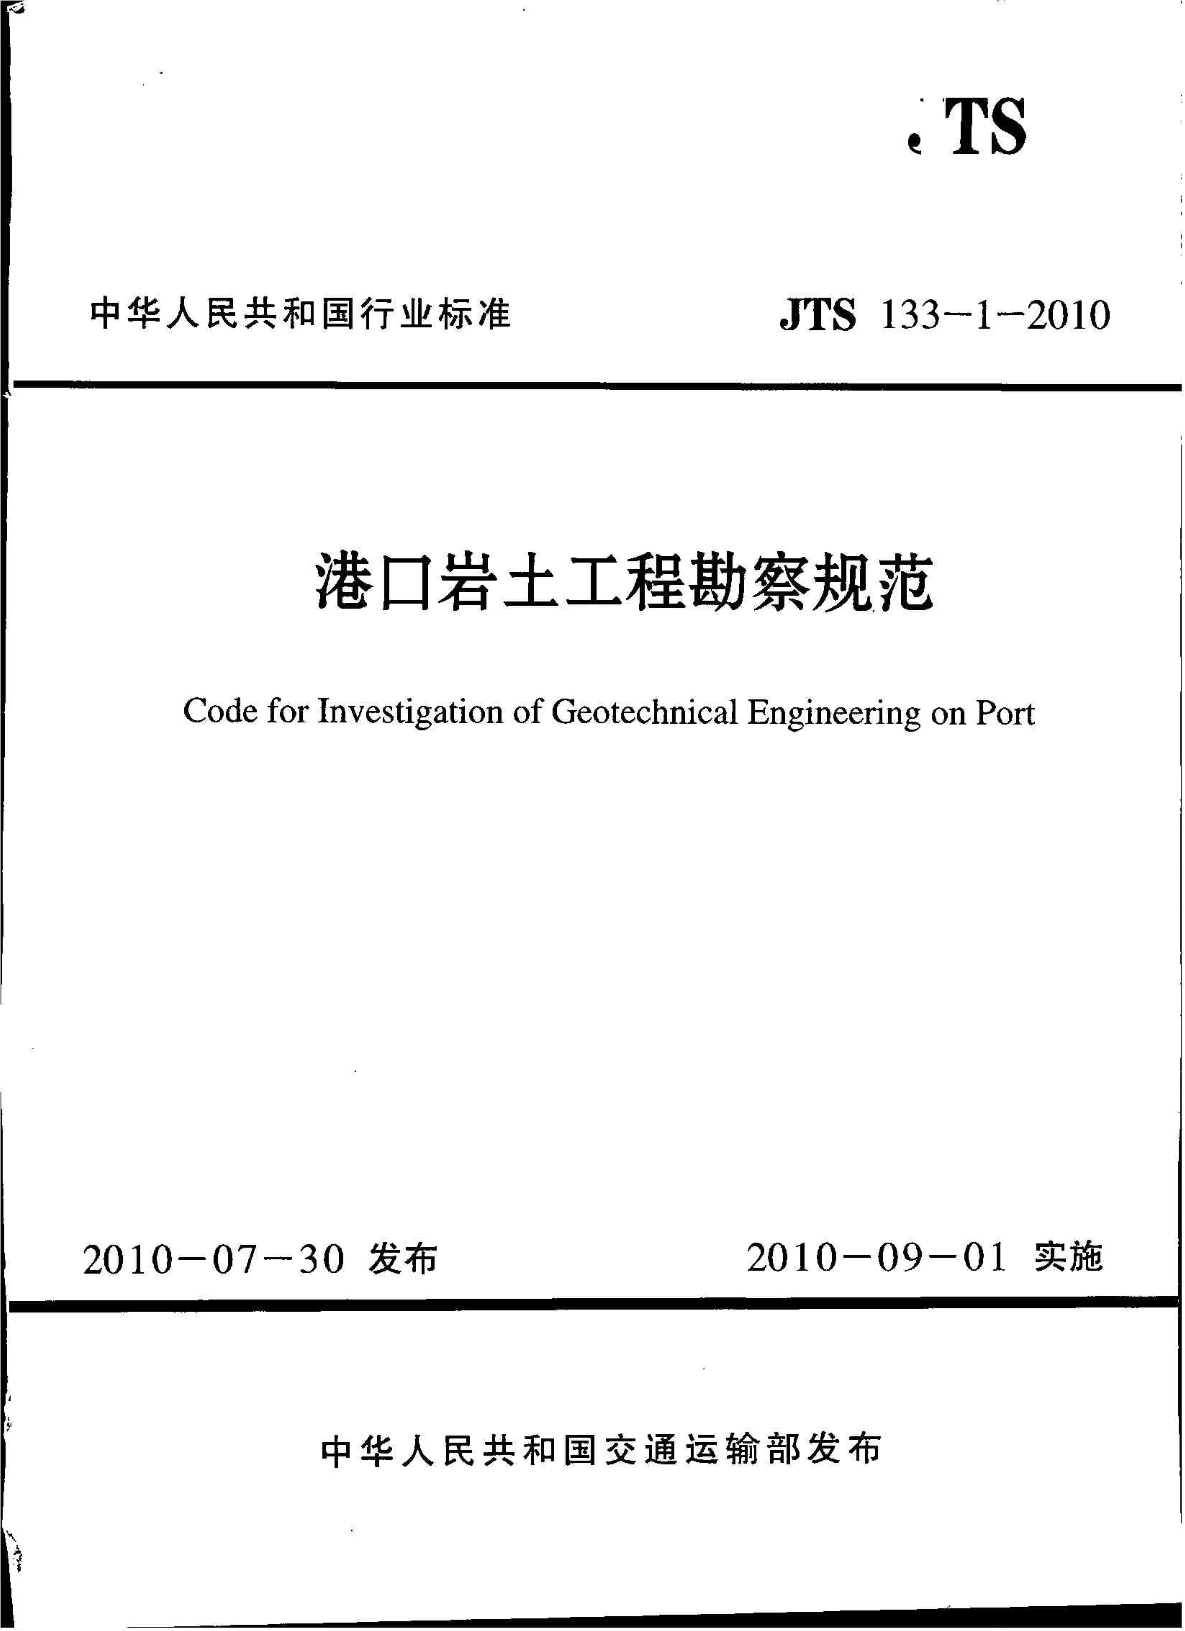 港口岩土工程勘察规范 JTS133-1-2010-图一